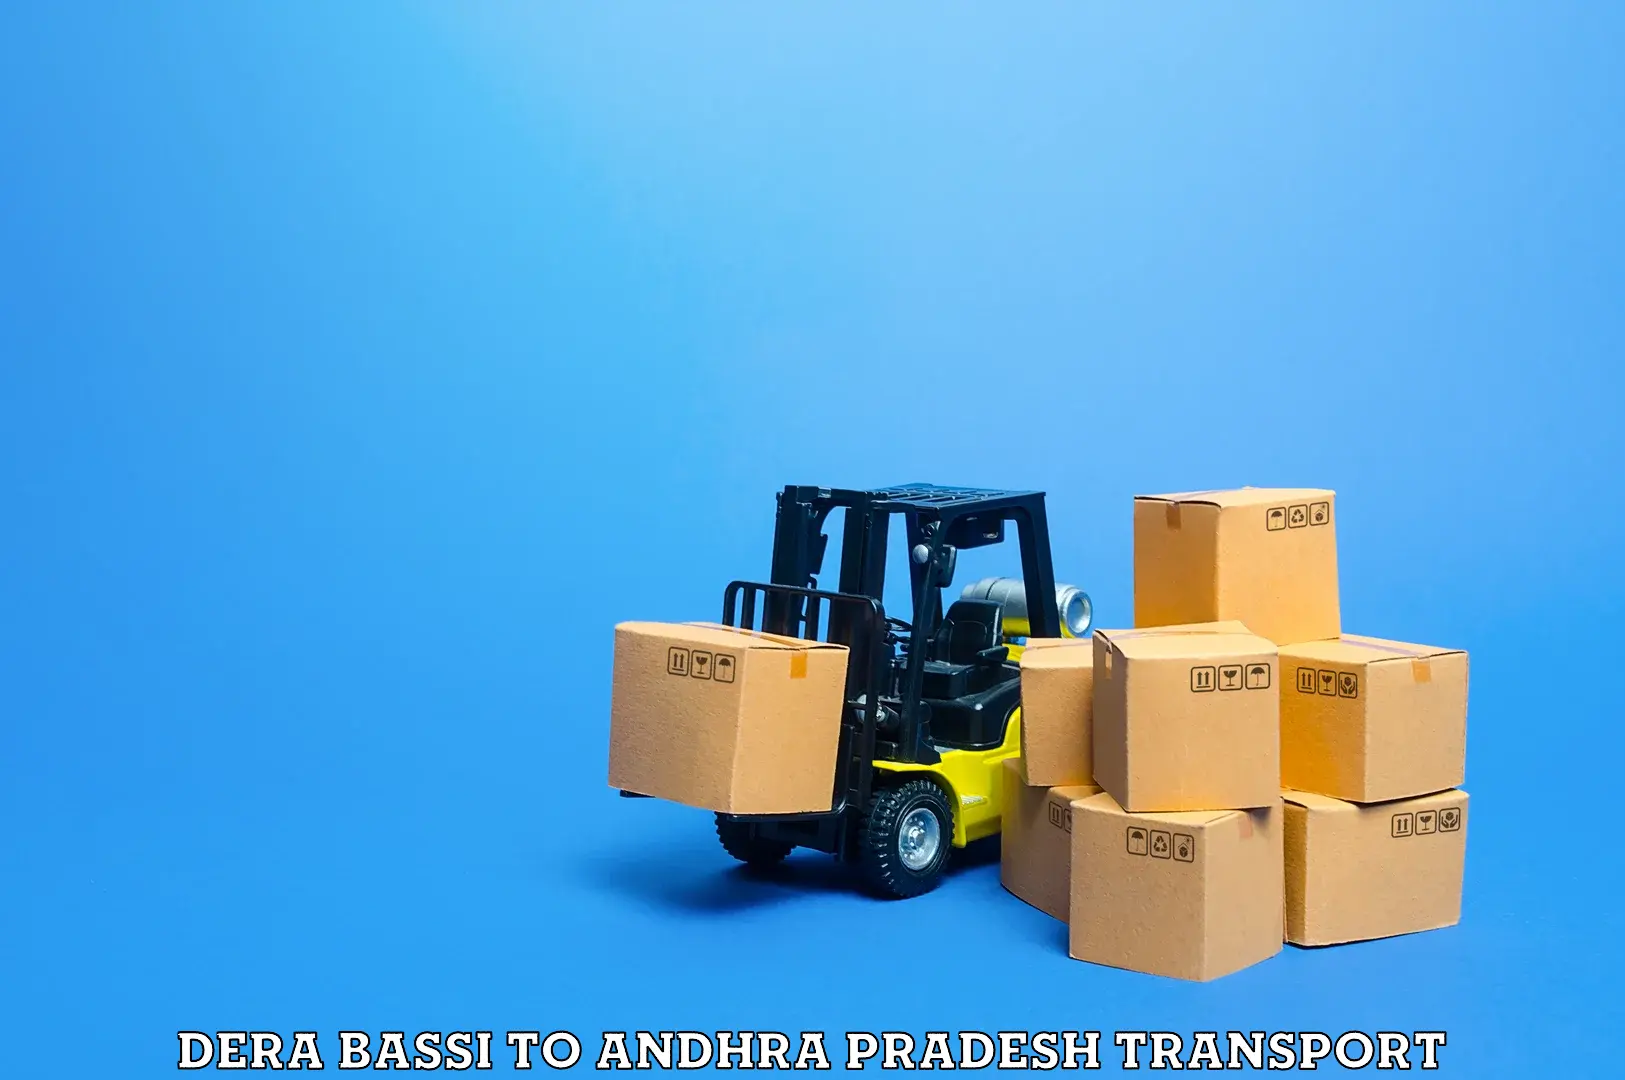 Transport in sharing Dera Bassi to Andhra Pradesh